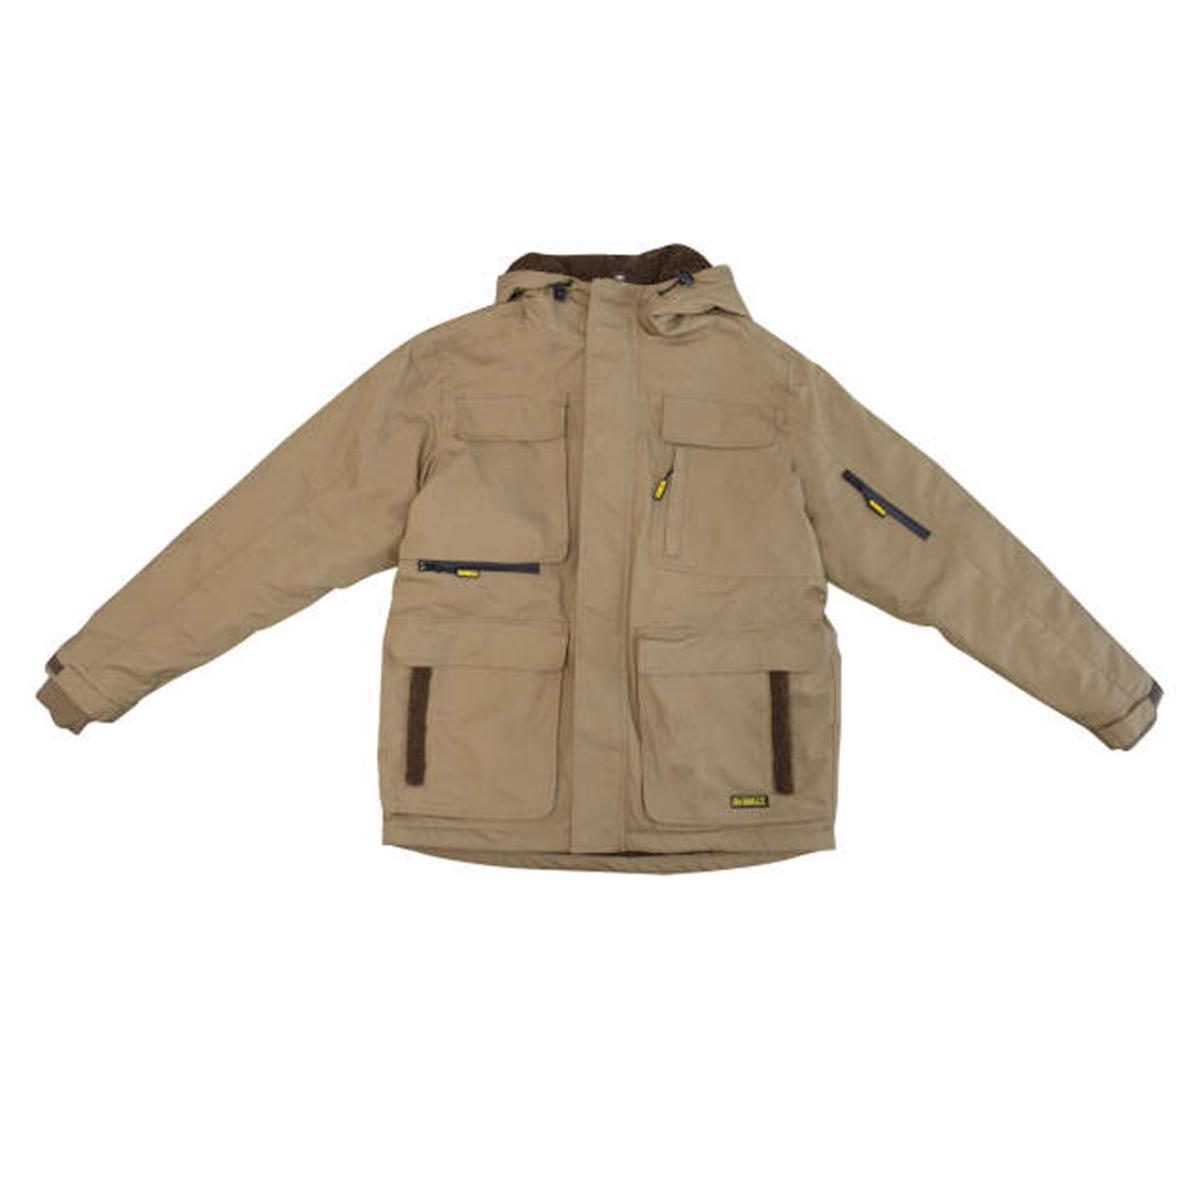 DeWalt Men's Heavy Duty Ripstop Heated Jacket with Battery